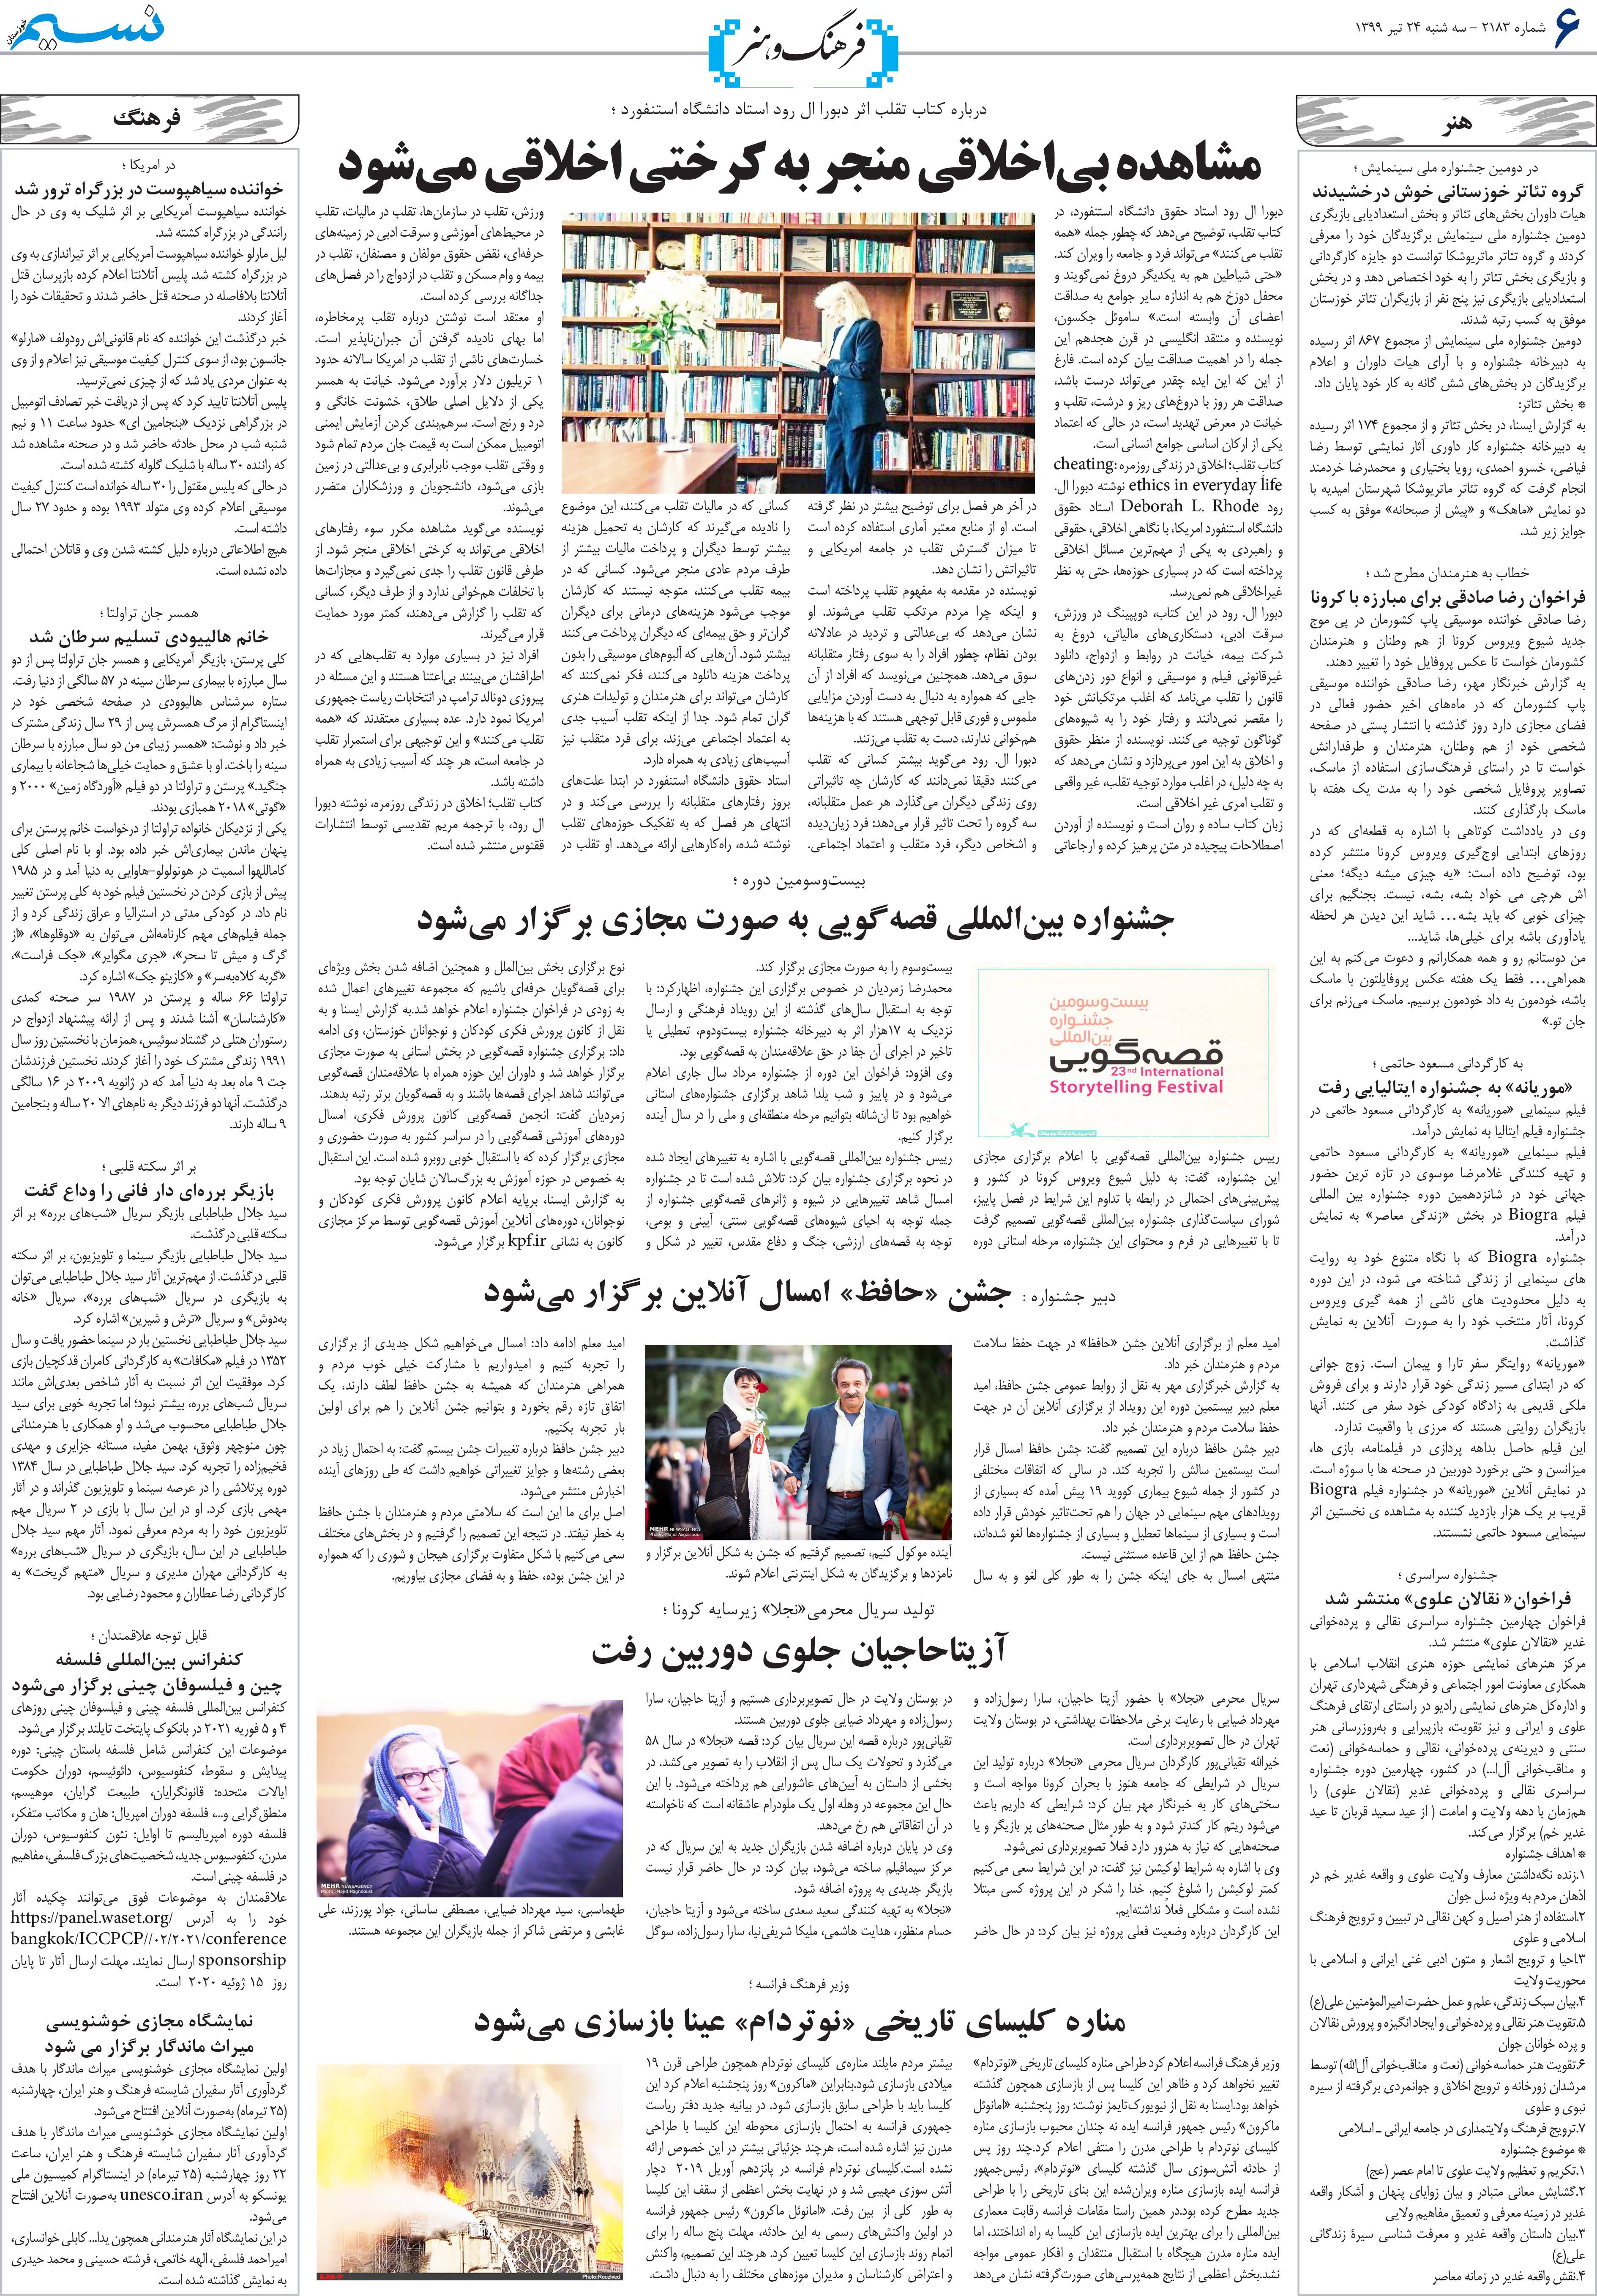 صفحه فرهنگ و هنر روزنامه نسیم شماره 2183